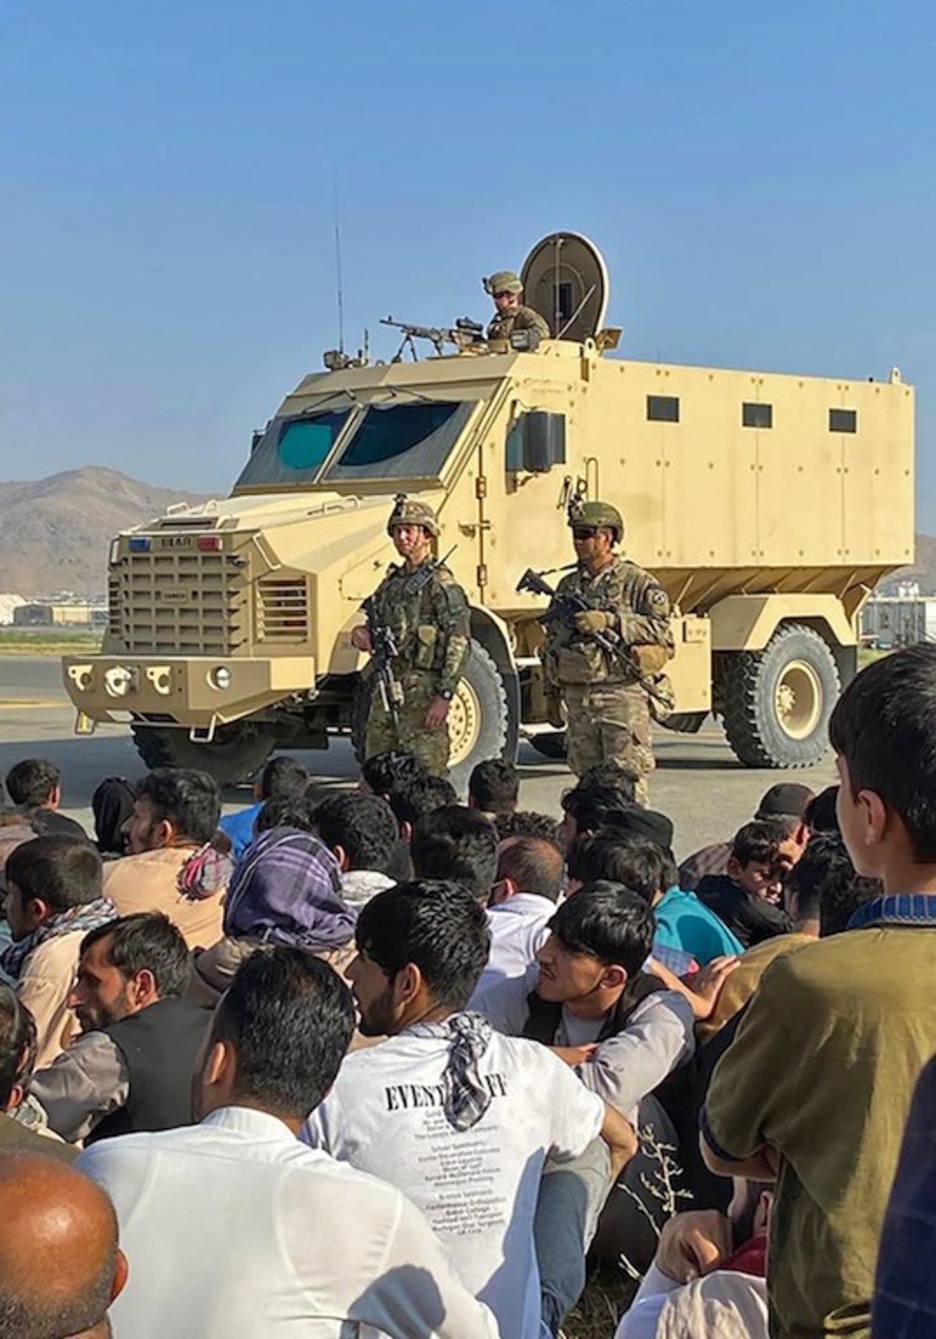 Ciudadanos afganos se agolpan en el aeropuerto de Kabul mientras los soldados estadounidenses montan guardia. (Shakib RAHMANI | AFP)